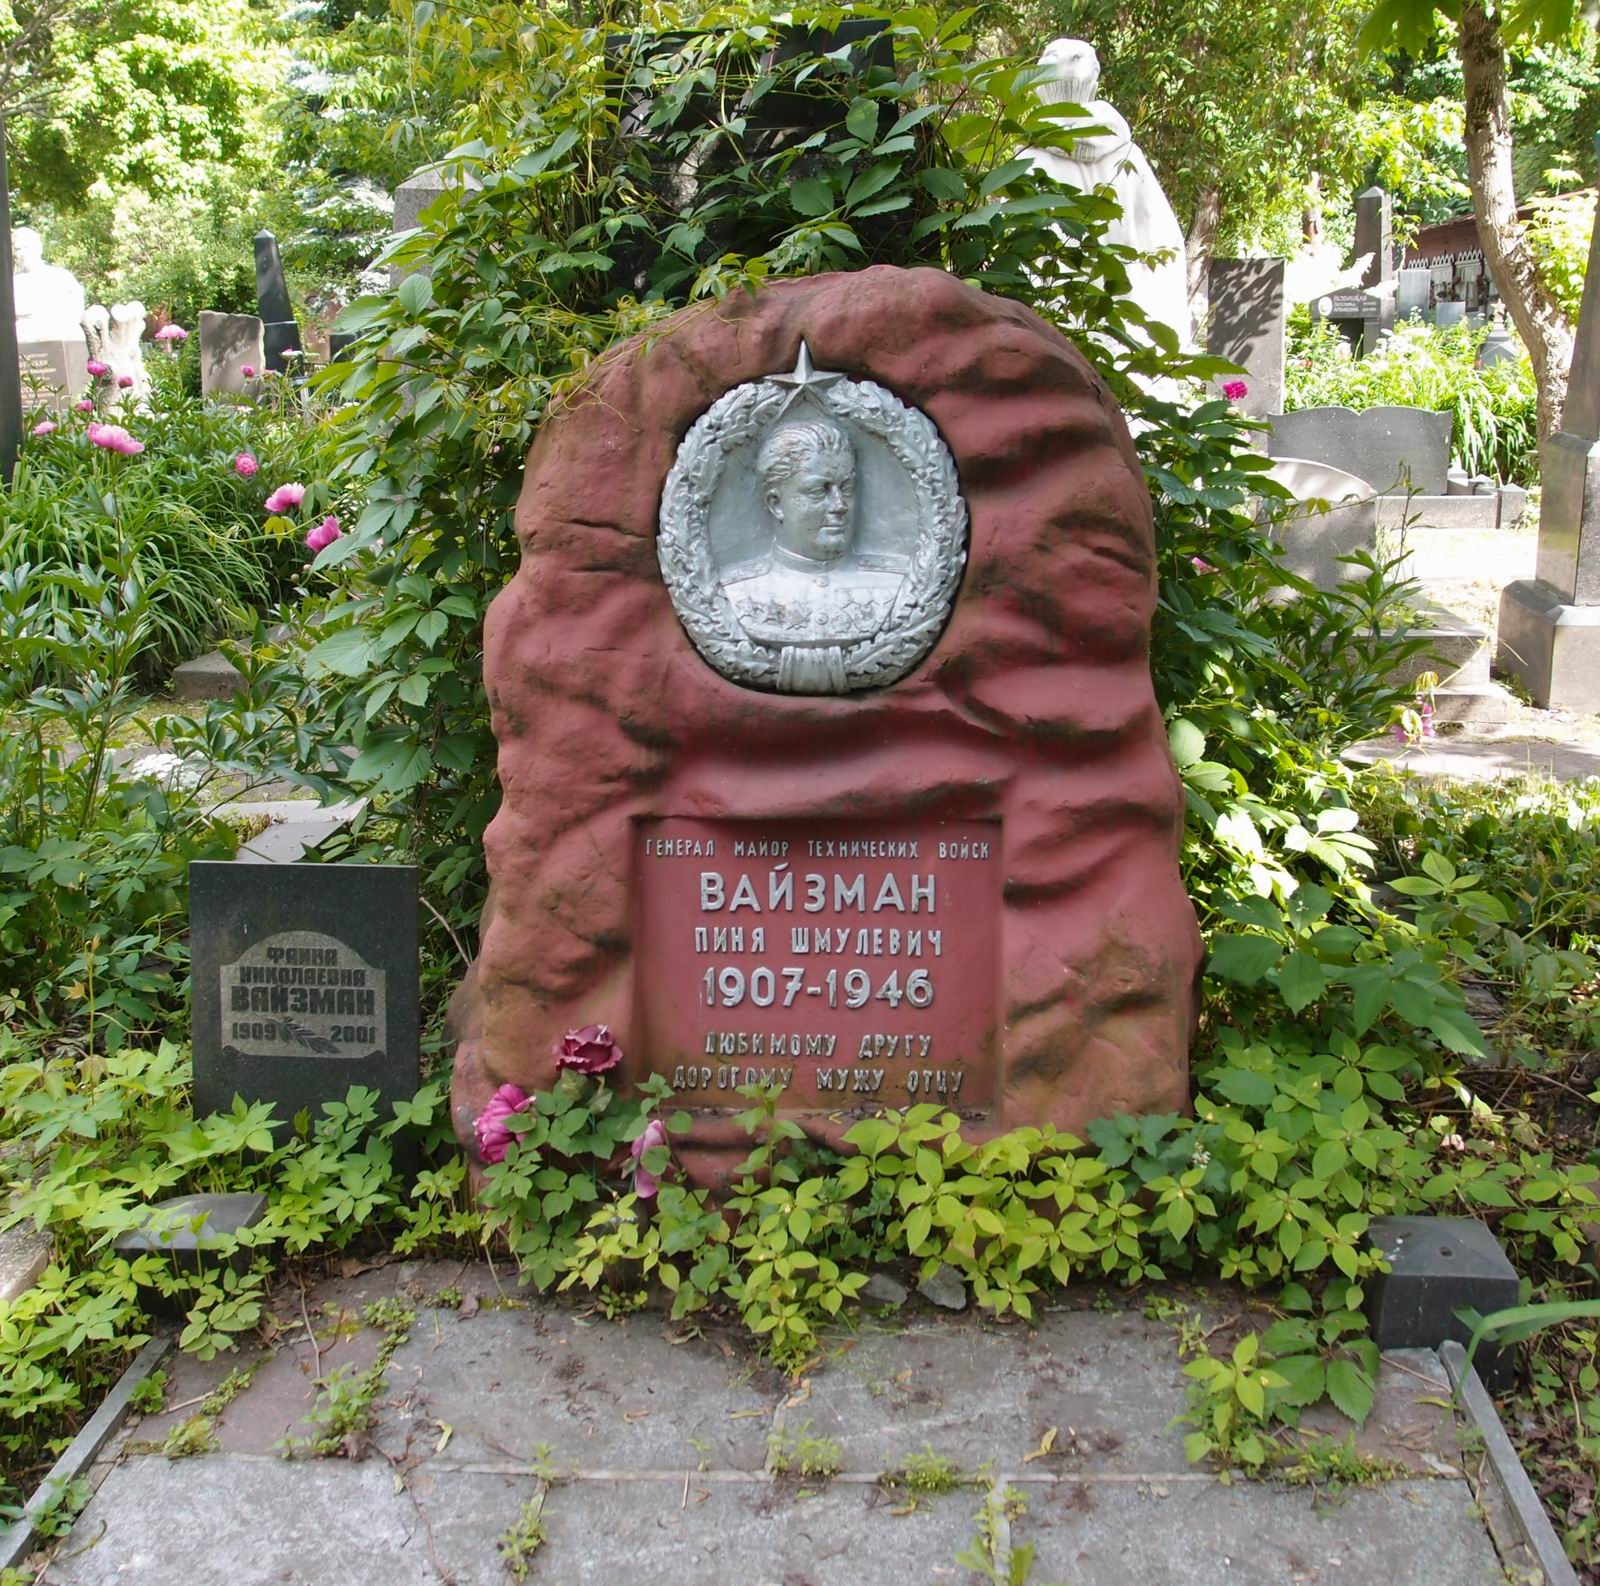 Памятник на могиле Вайзмана П.Ш. (1907-1946), на Новодевичьем кладбище (4-14-16). Нажмите левую кнопку мыши чтобы увидеть фрагмент памятника.